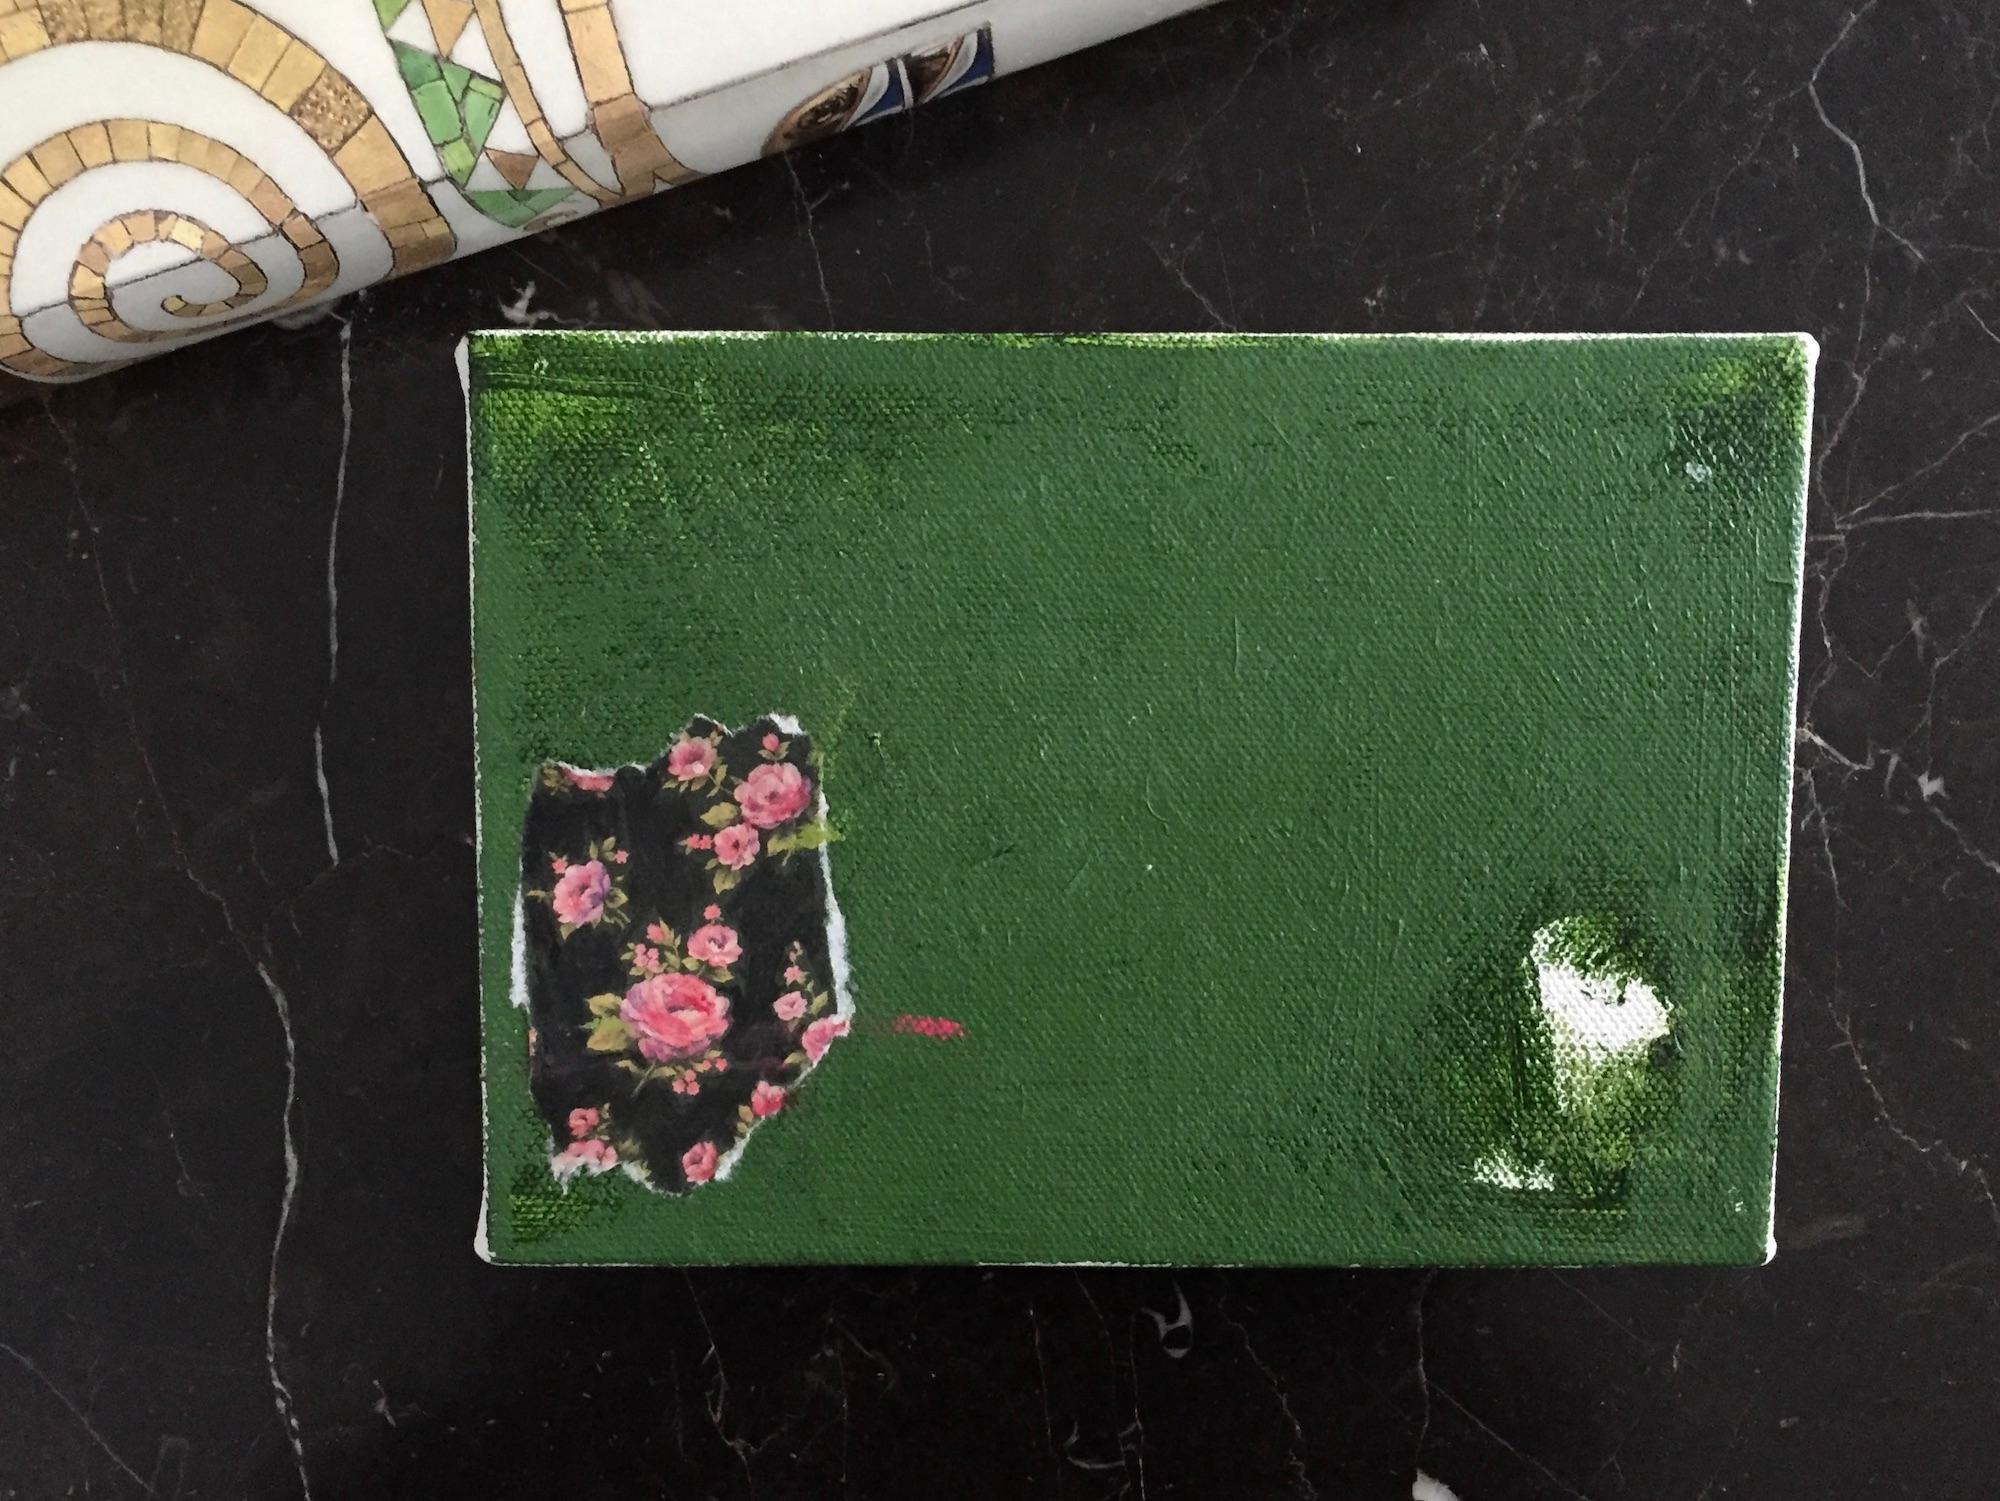 Wandblume (5 Zoll x 7 Zoll, grün, rosa, schwarz, weiß, florales abstraktes Gemälde) (Zeitgenössisch), Painting, von Andrea Stajan-Ferkul